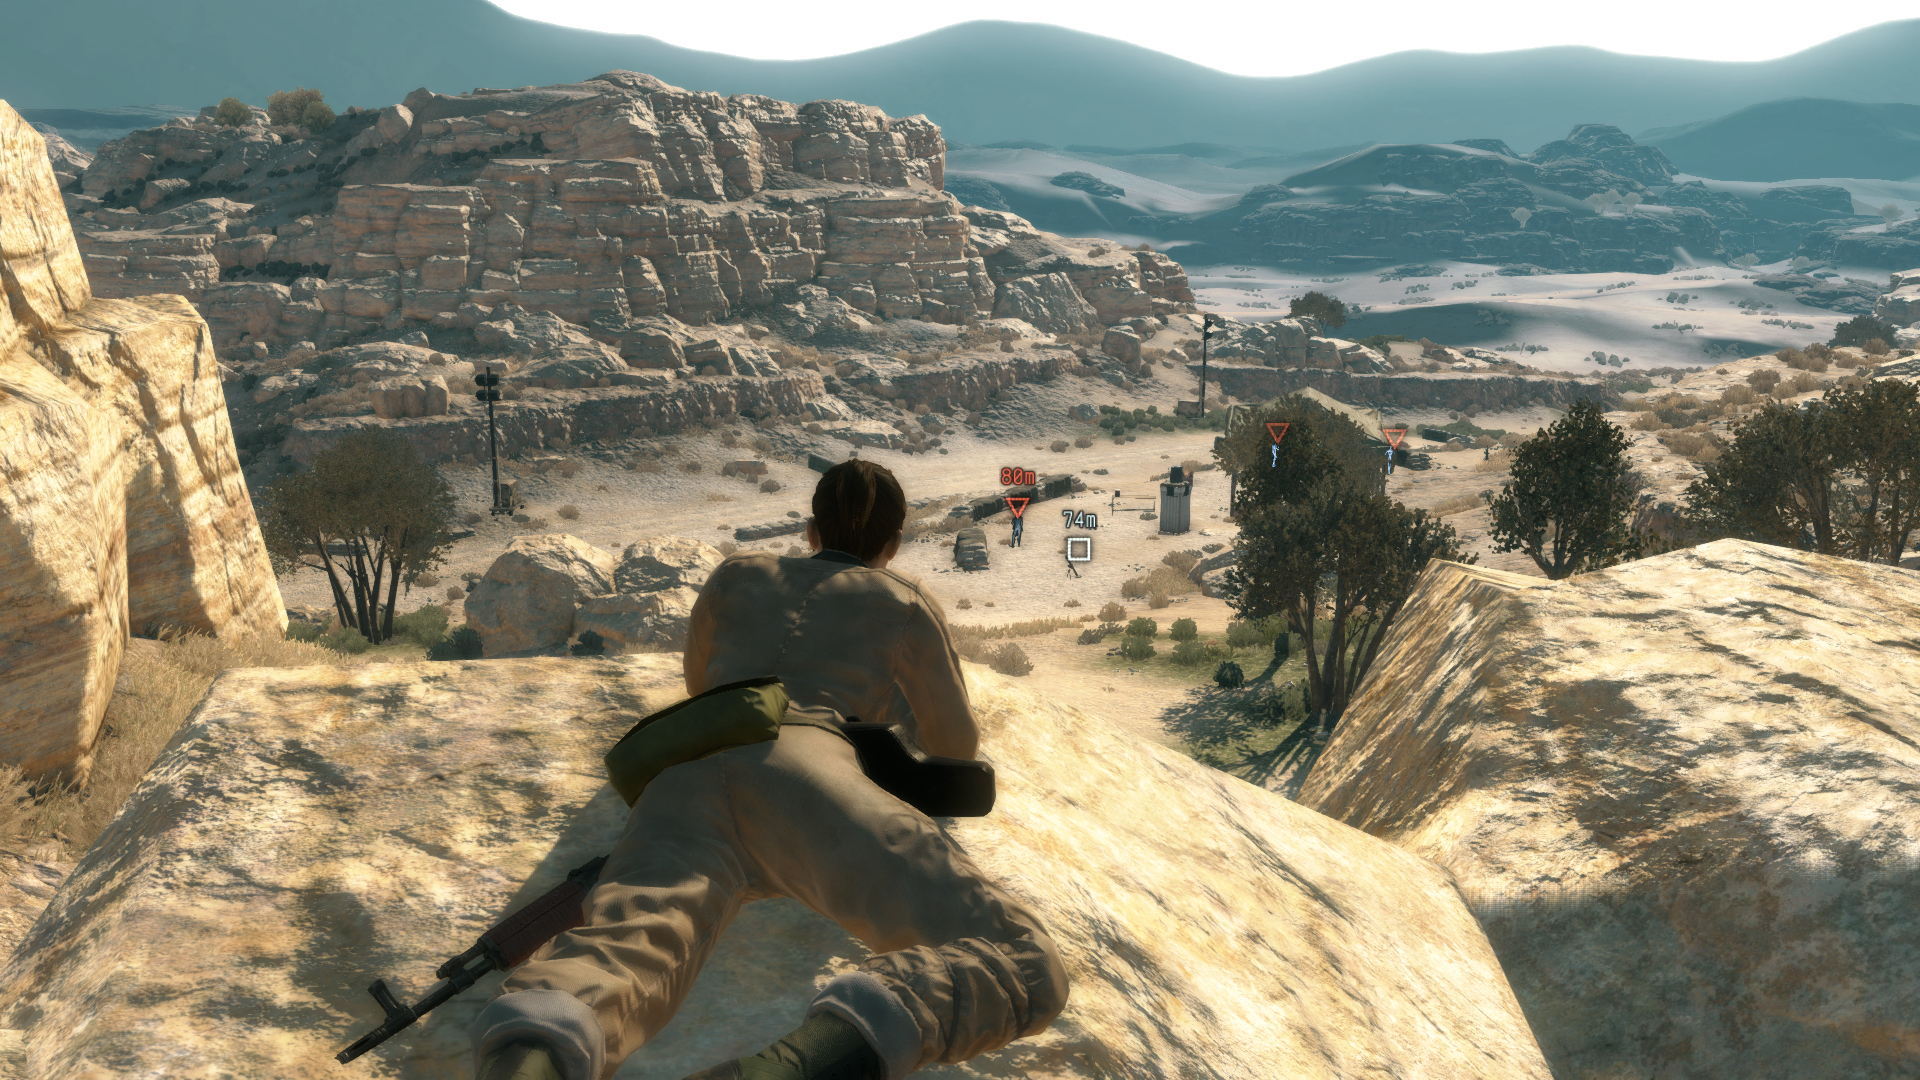  Spending two weeks behind enemy lines in Metal Gear Solid 5 